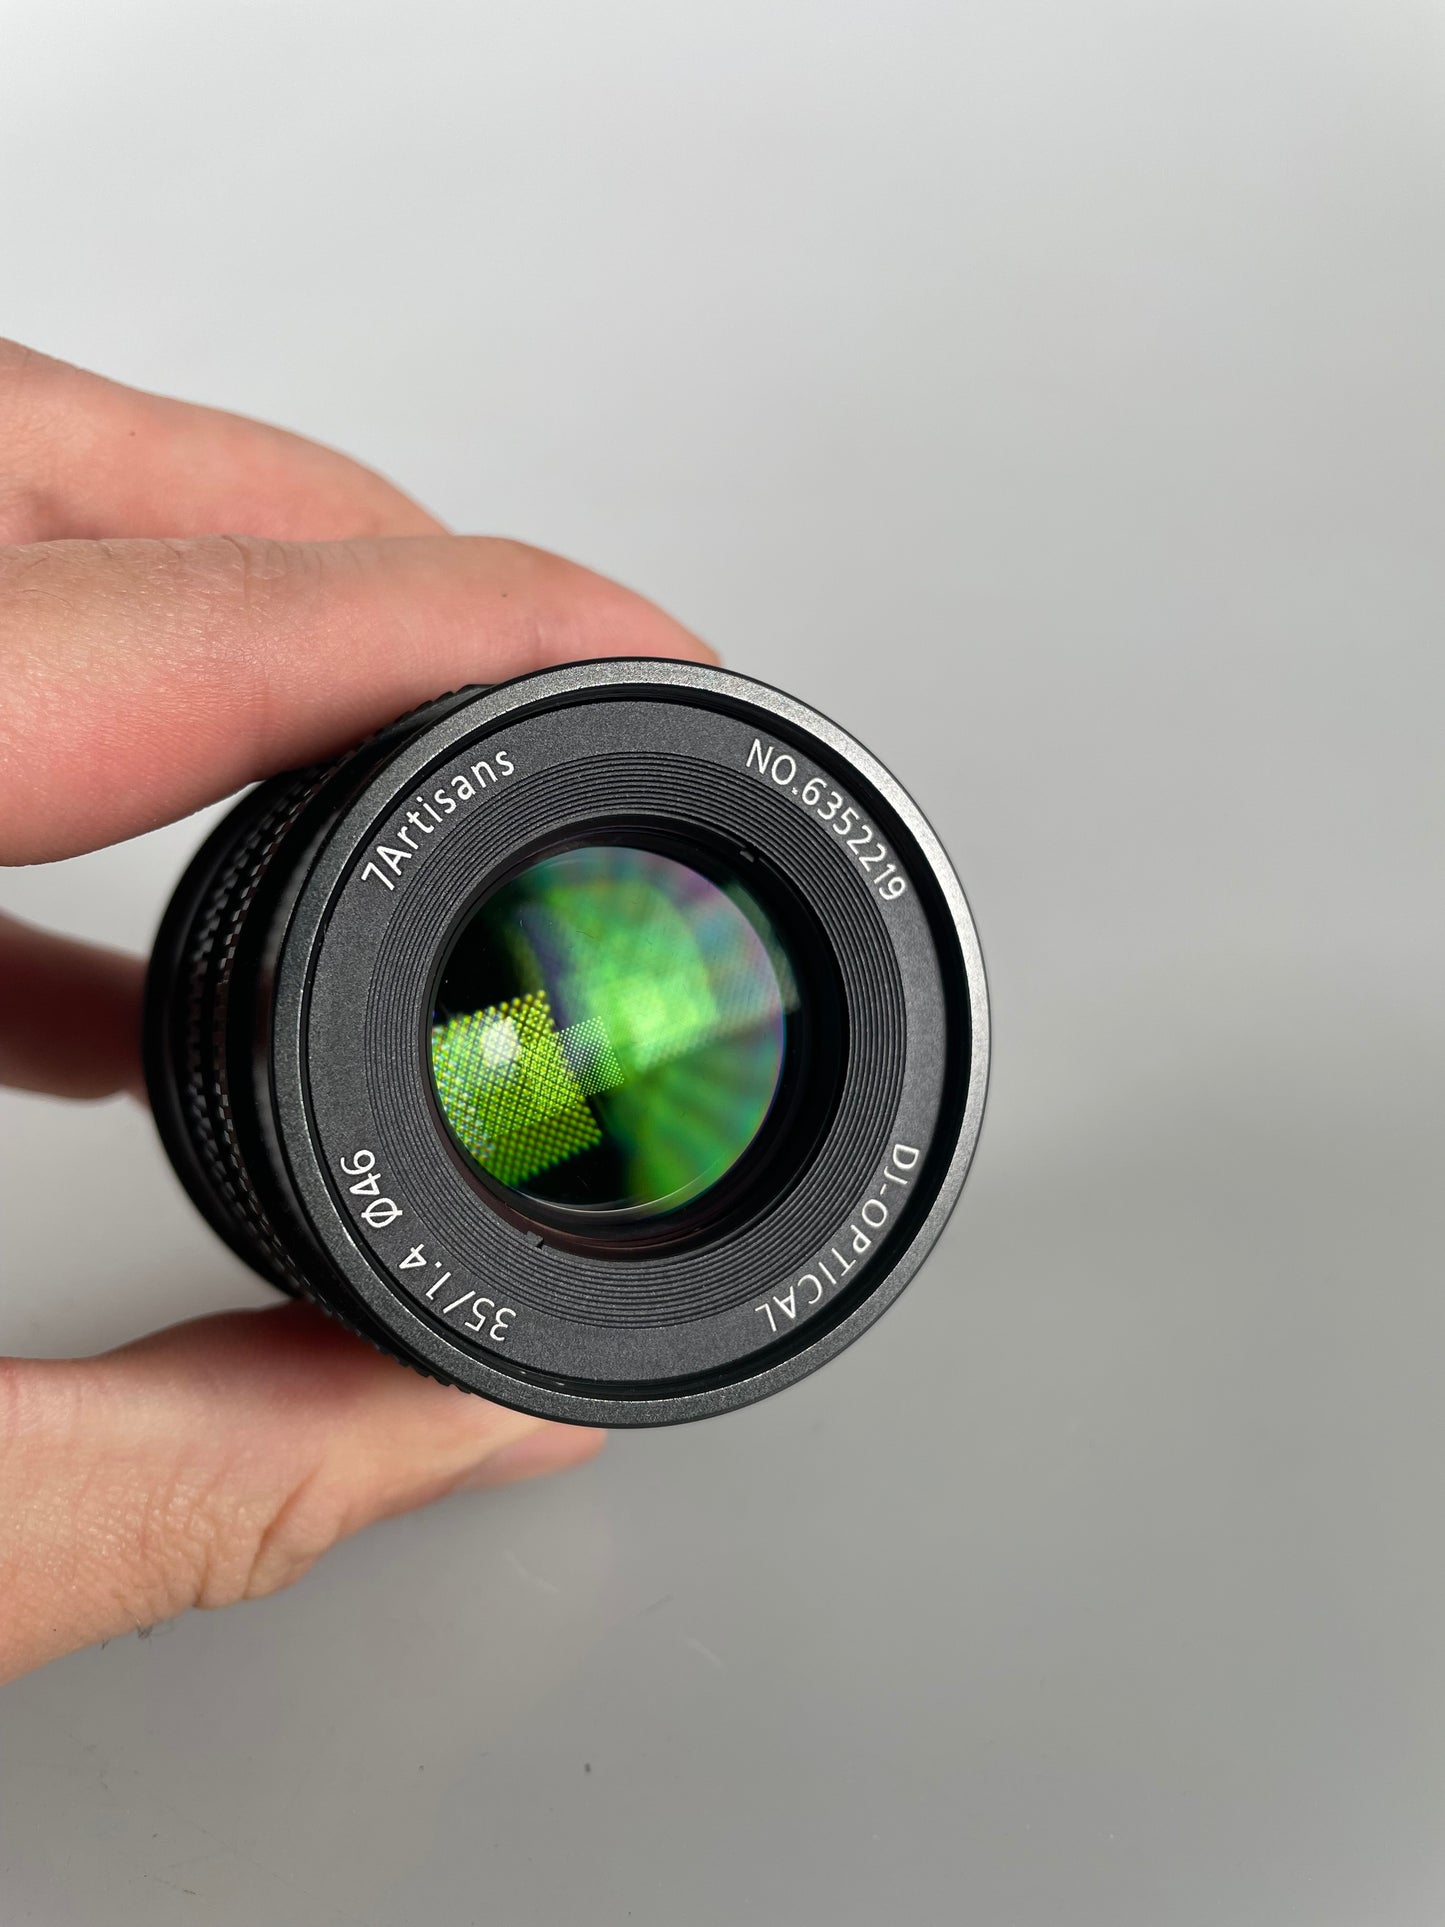 7artisans 35mm F1.4 Full Frame Manual Focus Lens for Sony E Mount Camera